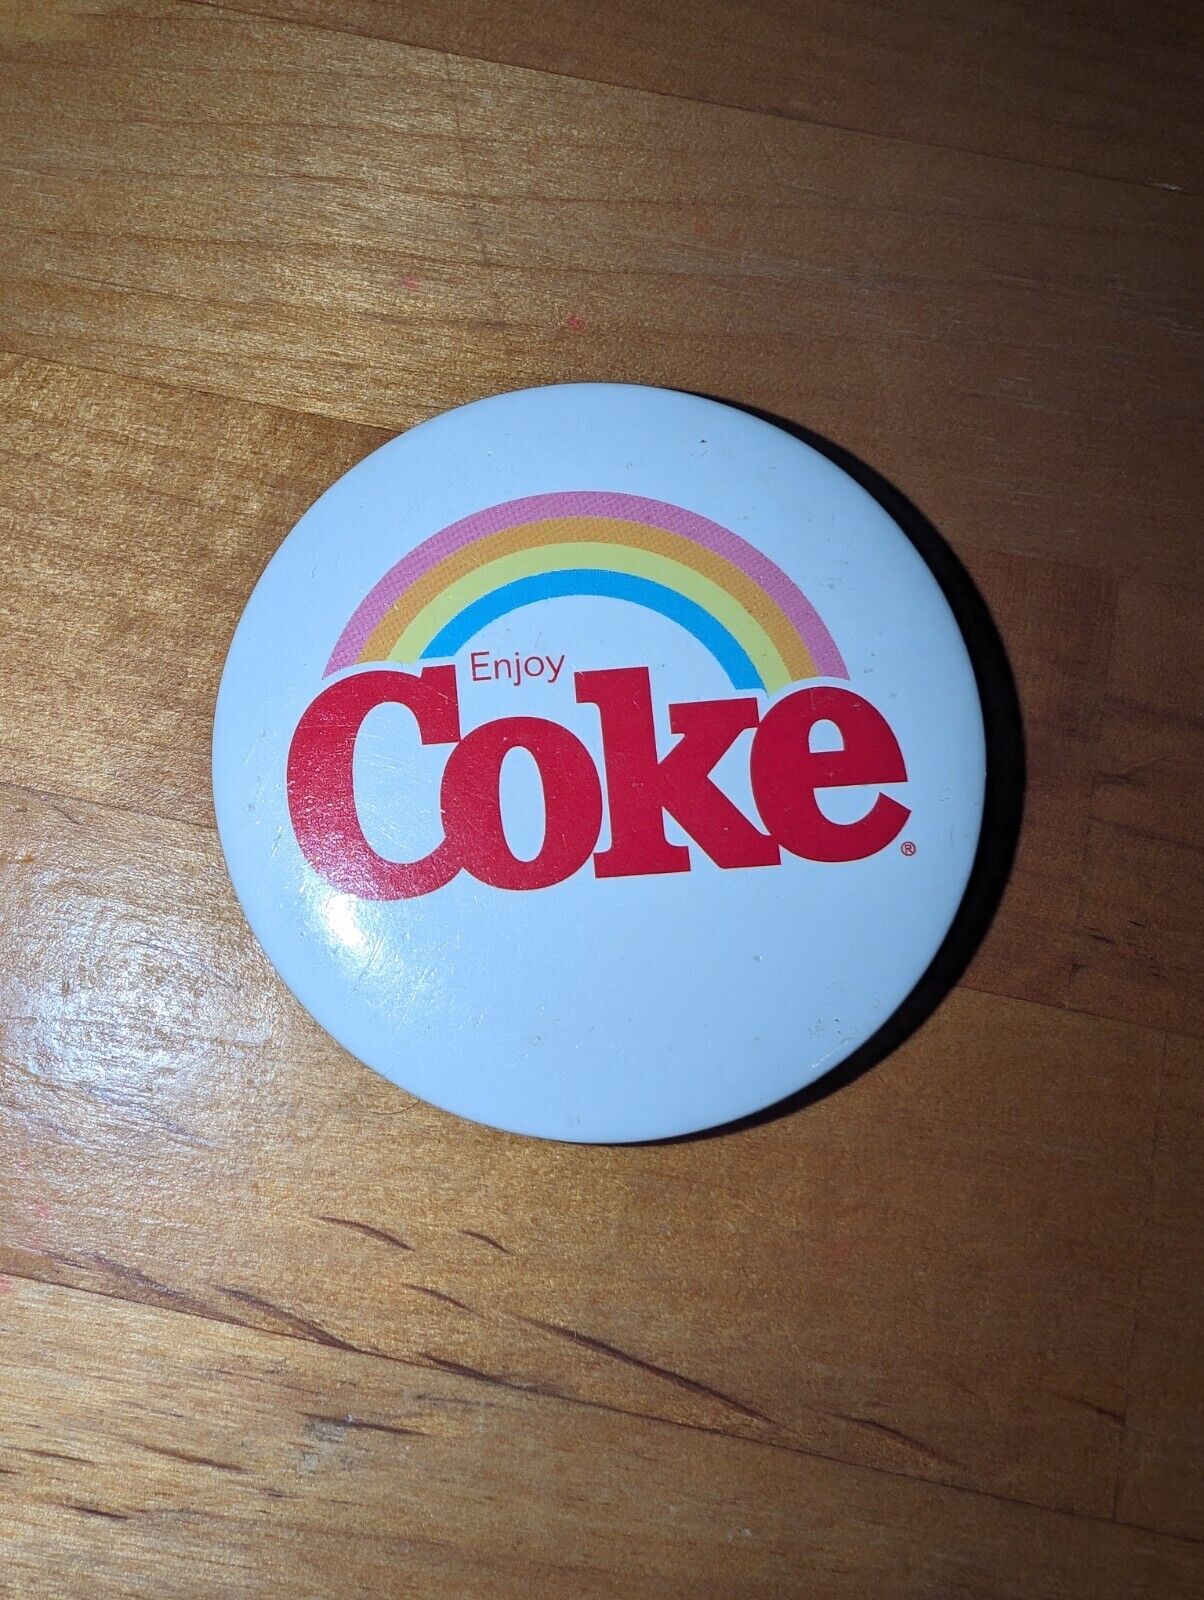 Rare Vintage 1970s Enjoy Coke Rainbow Pinback Button Coca-Cola Pride